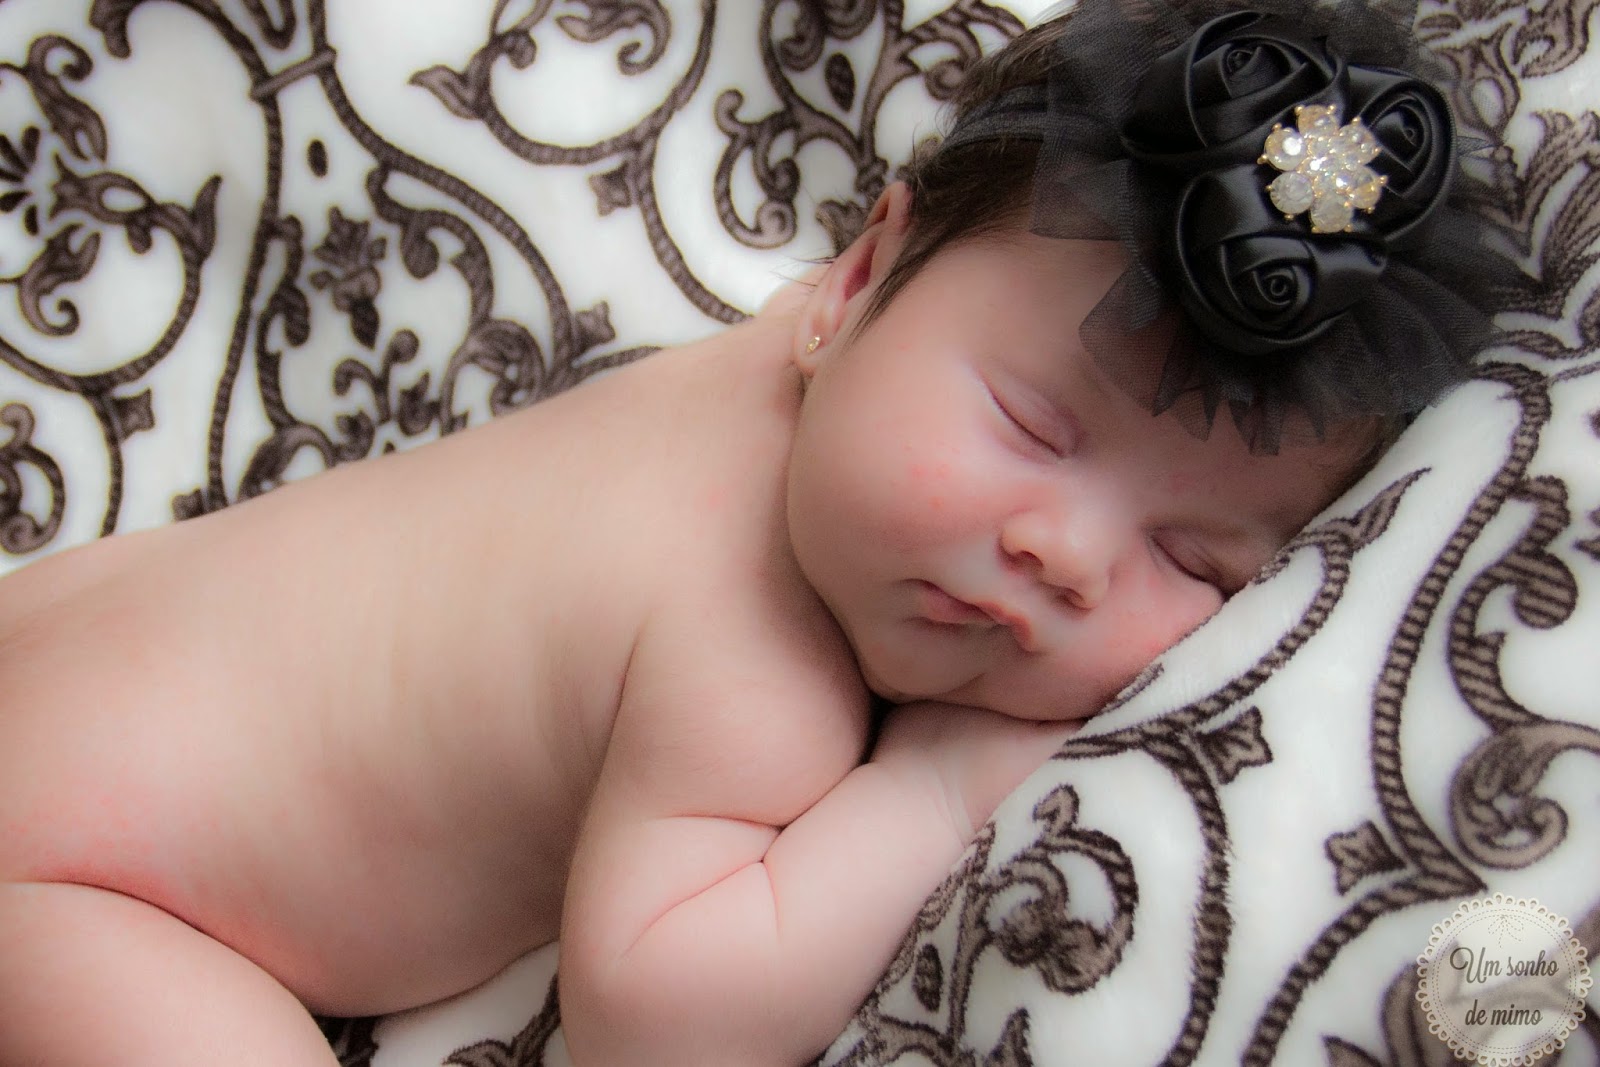 Fotografia newborn bh, fotografia newborn belo horizonte, fotografia newborn, um sonho de mimo